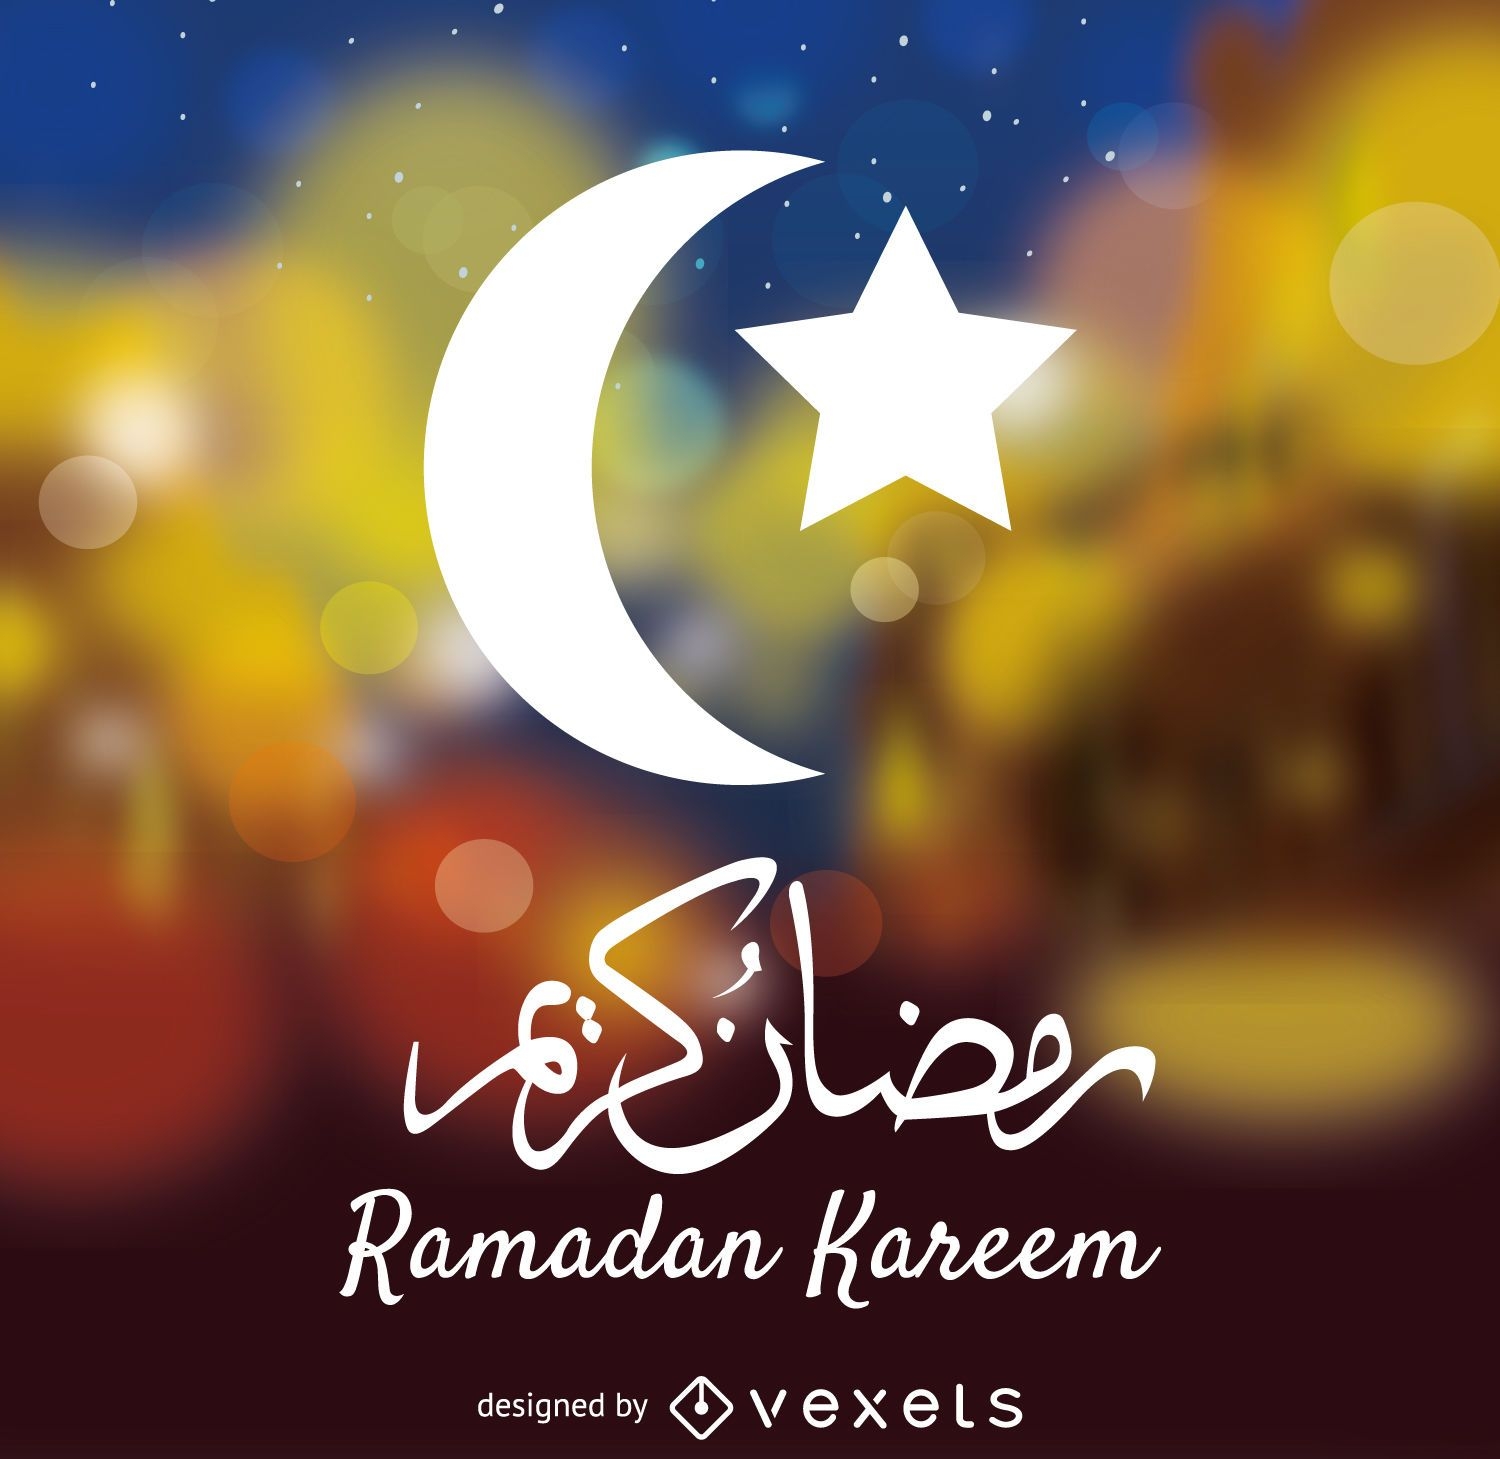 Signo de Ramadán Kareem